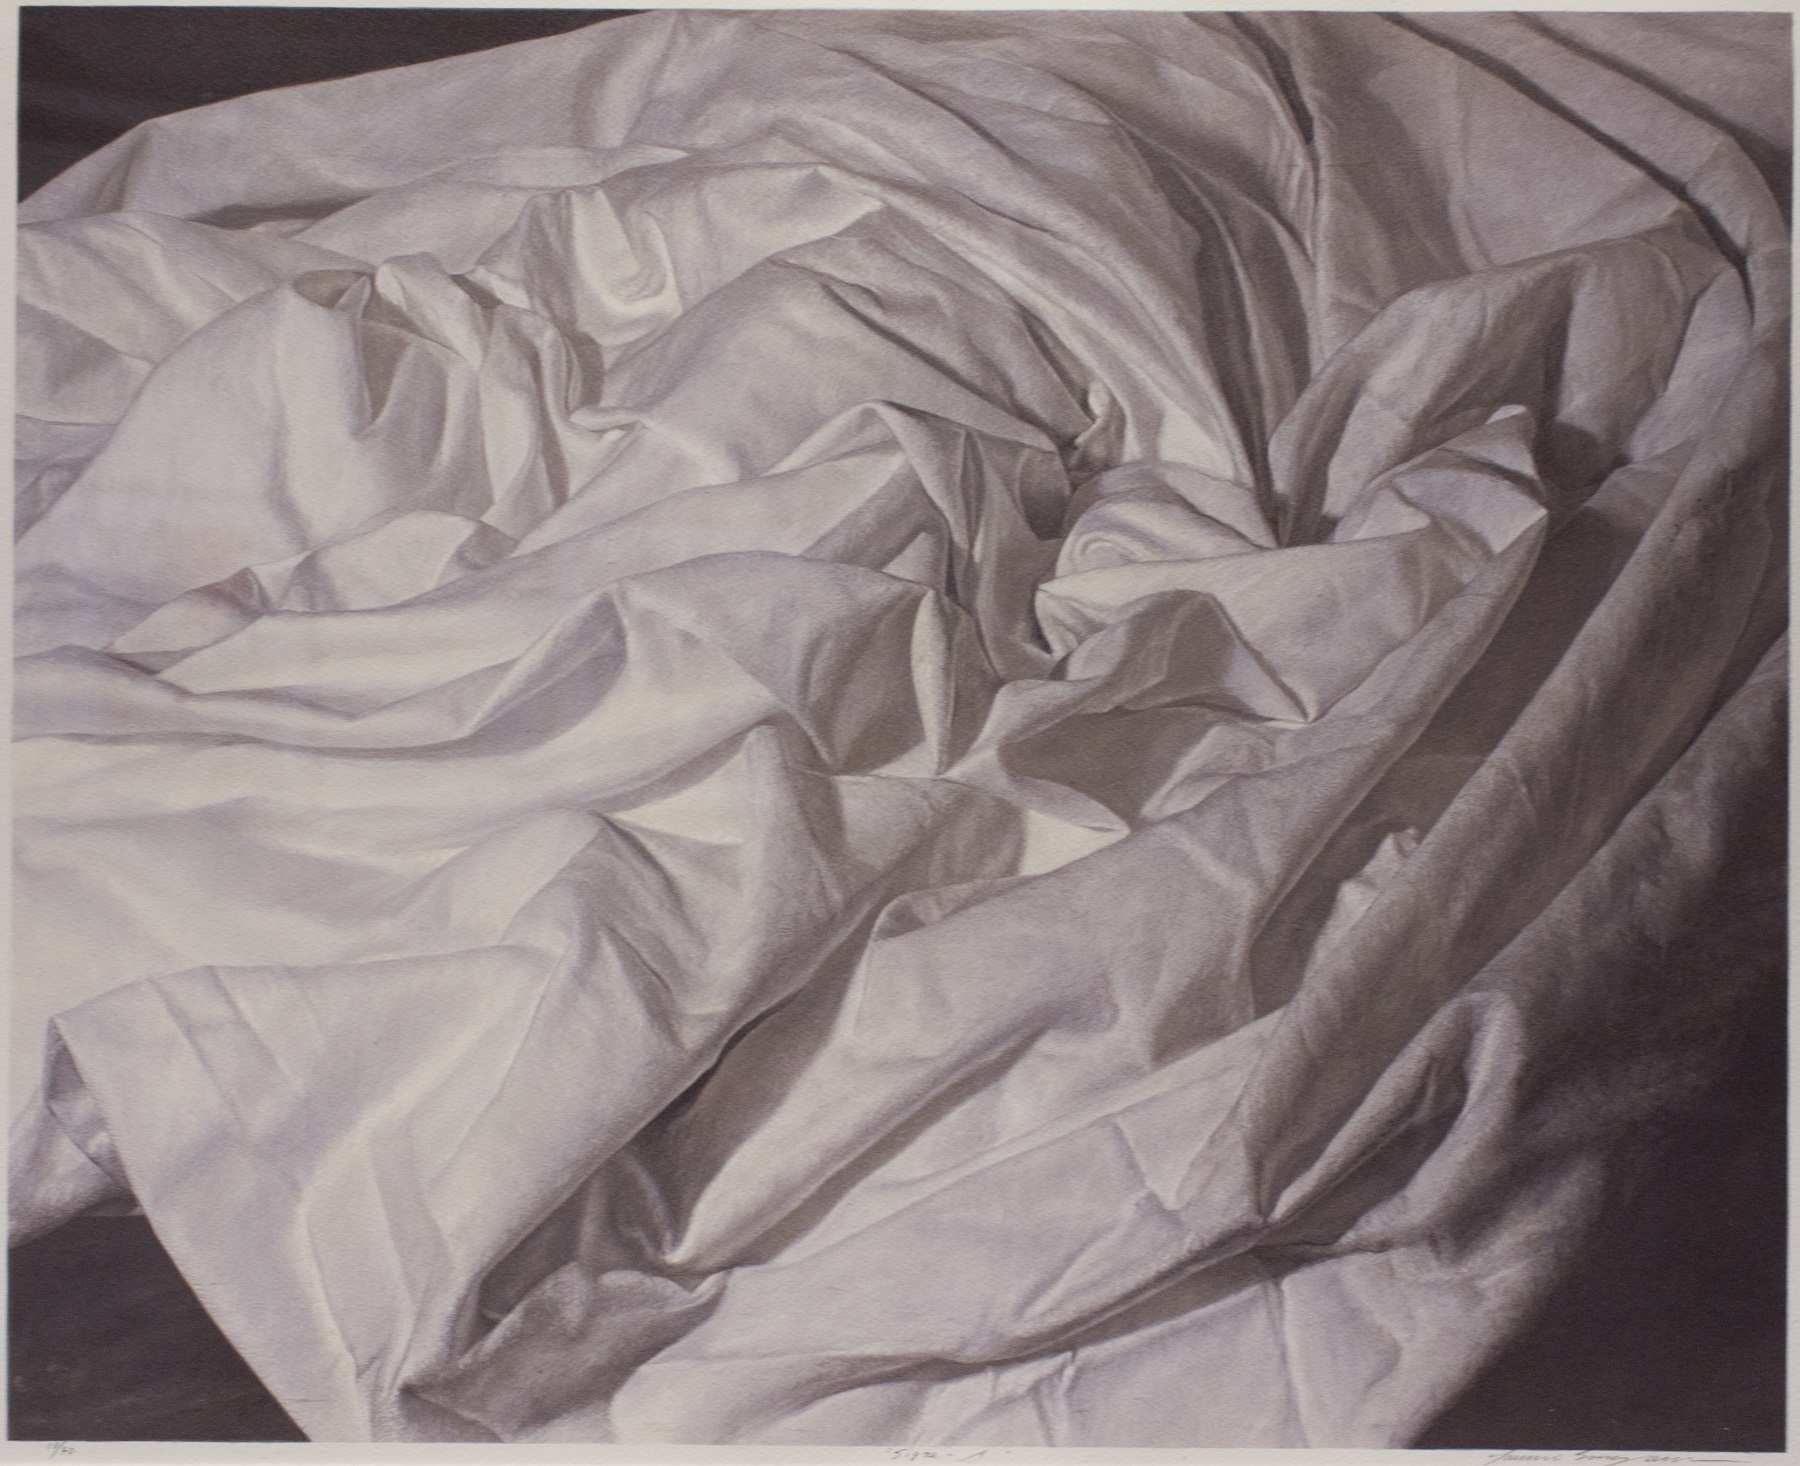 日本平版大師園山晴巳擅長用細膩寫實的平版技法表達生活中的靜物，「預兆」系列作品一筆筆勾勒出床單皺褶的痕跡紋路，栩栩如生。